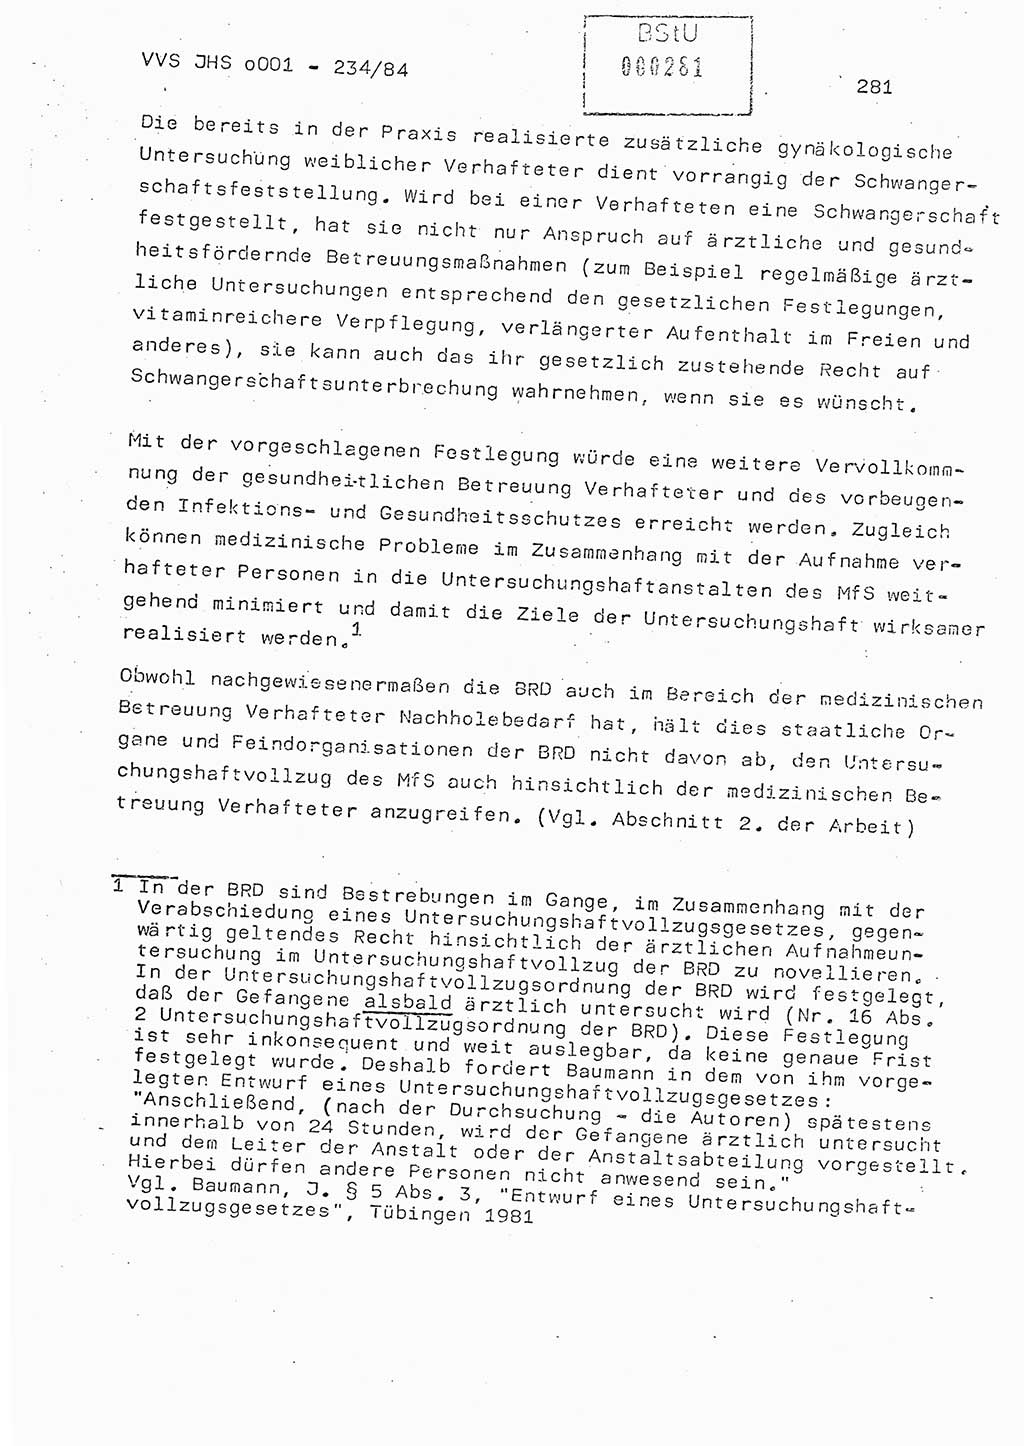 Dissertation Oberst Siegfried Rataizick (Abt. ⅩⅣ), Oberstleutnant Volkmar Heinz (Abt. ⅩⅣ), Oberstleutnant Werner Stein (HA Ⅸ), Hauptmann Heinz Conrad (JHS), Ministerium für Staatssicherheit (MfS) [Deutsche Demokratische Republik (DDR)], Juristische Hochschule (JHS), Vertrauliche Verschlußsache (VVS) o001-234/84, Potsdam 1984, Seite 281 (Diss. MfS DDR JHS VVS o001-234/84 1984, S. 281)